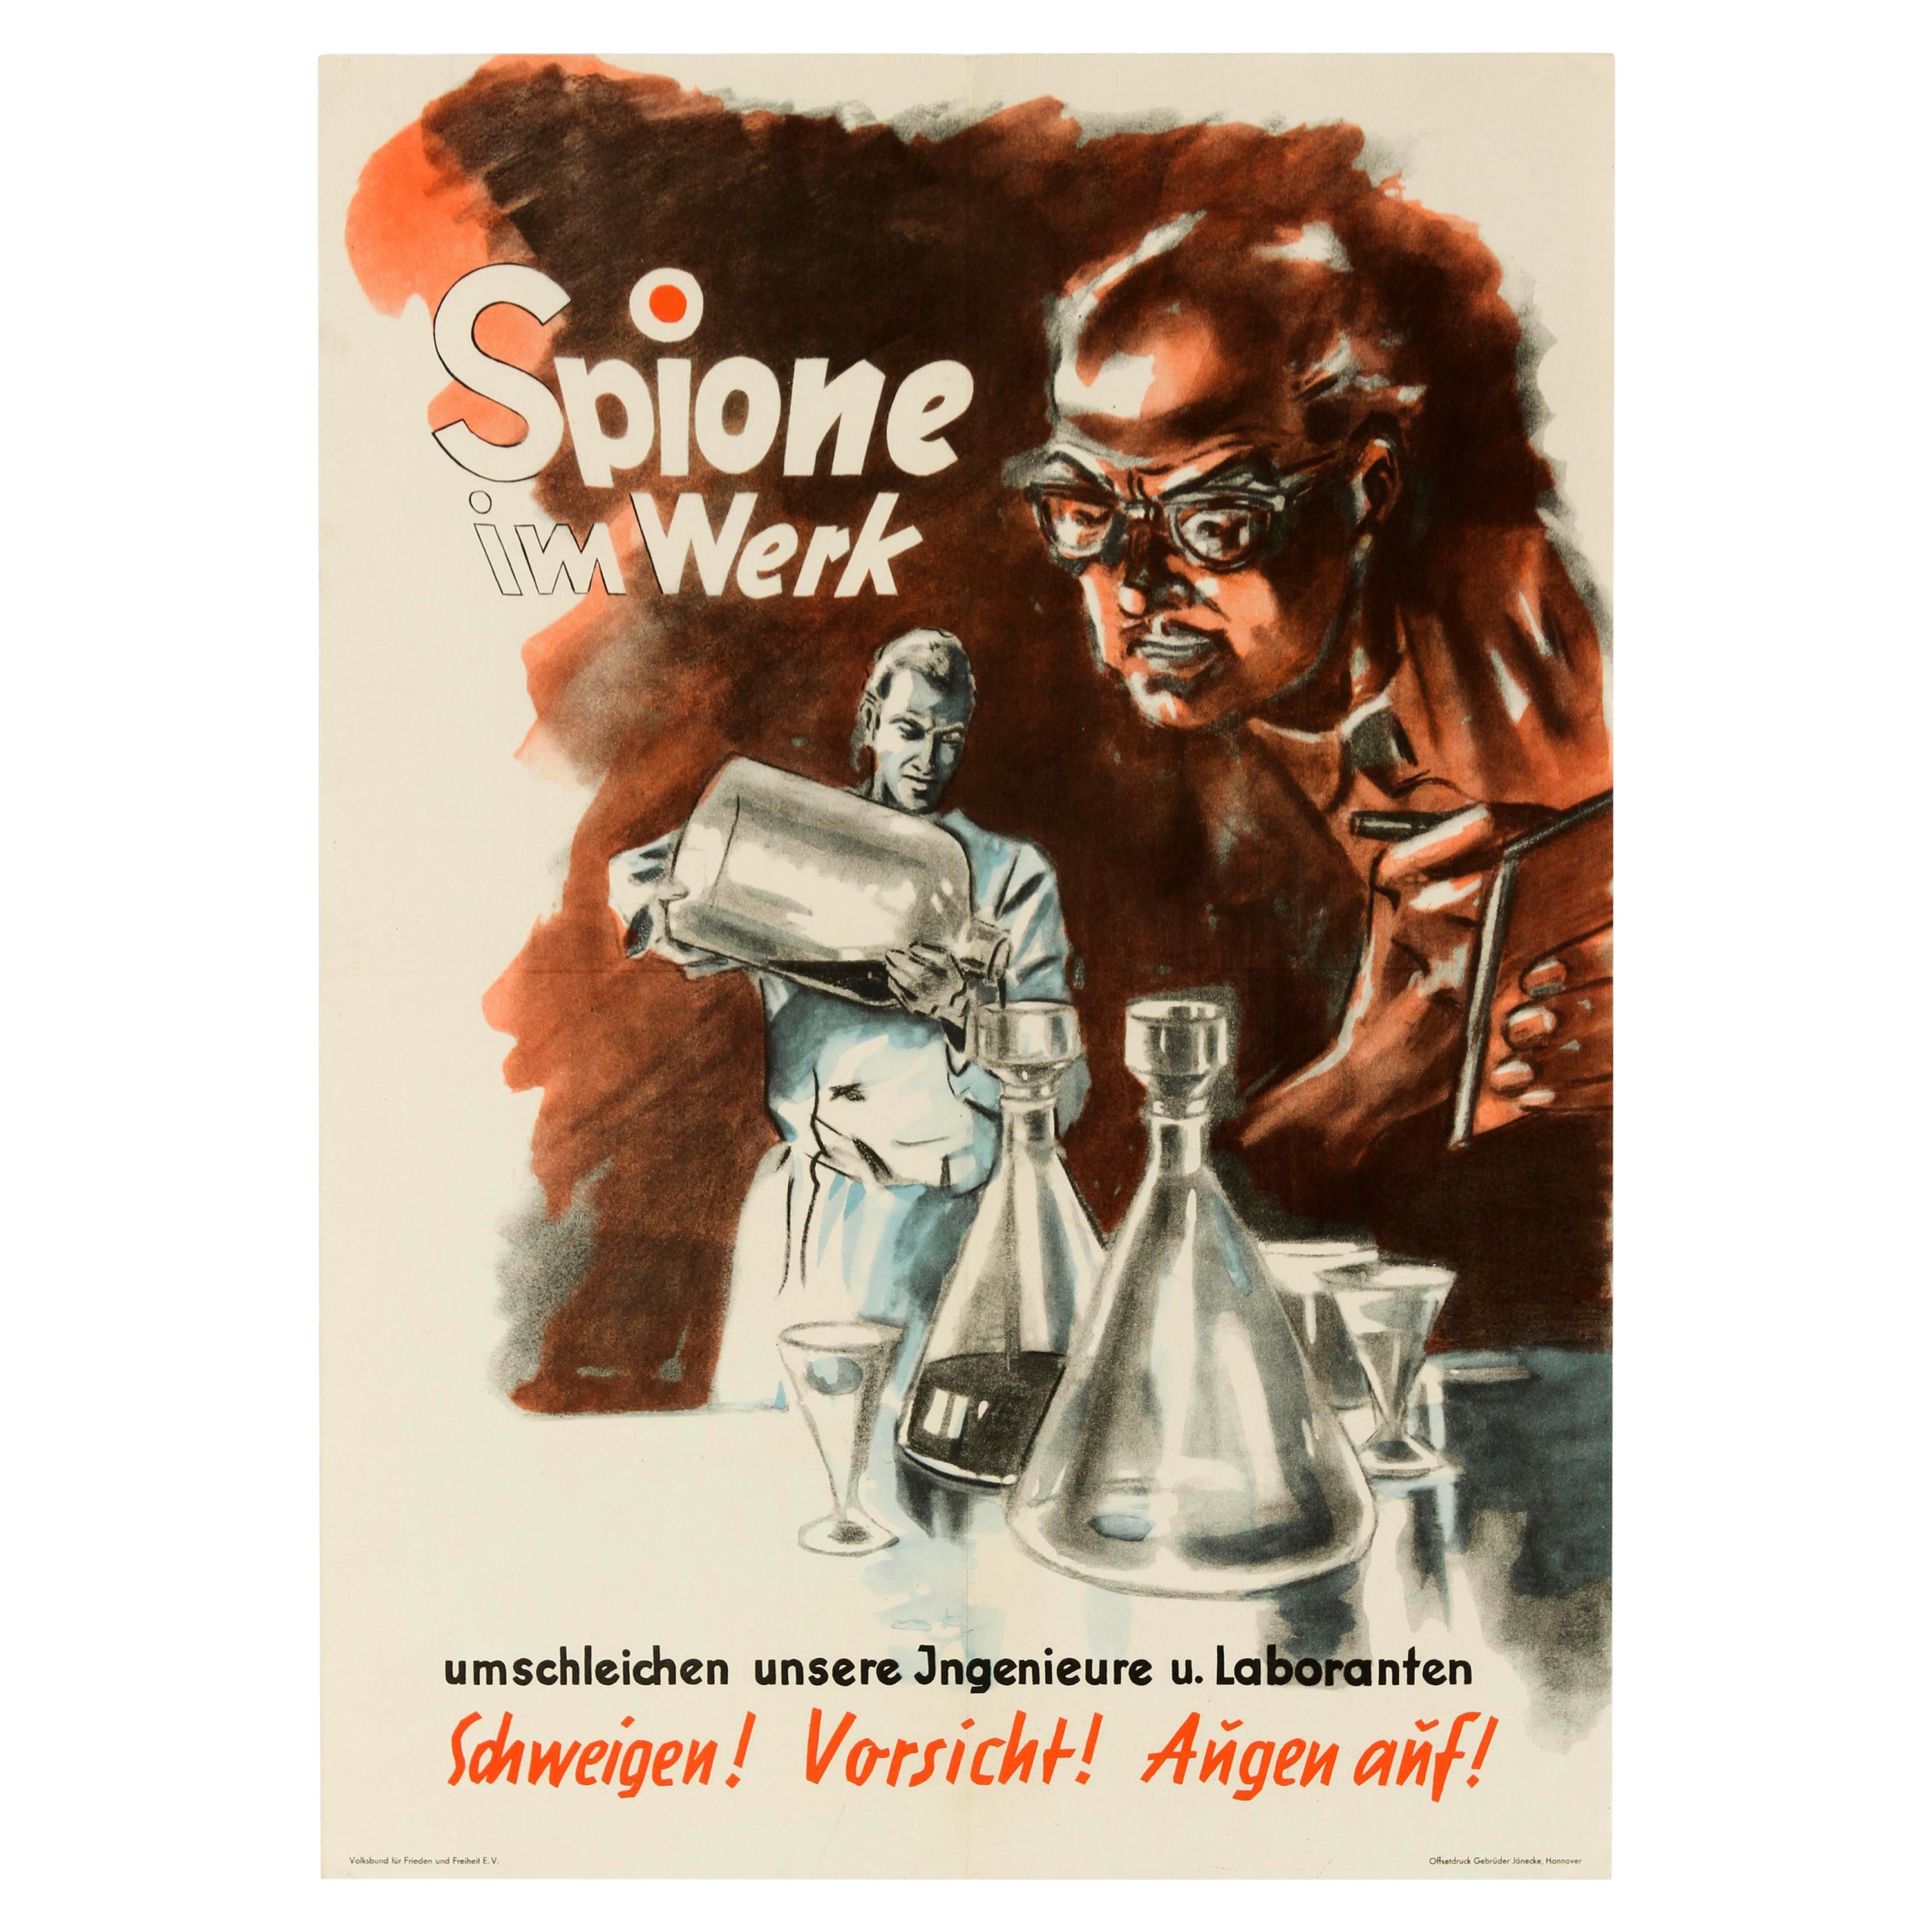 Original Vintage-Propagandaplakat "Spione Im Werk" aus dem Kalten Krieg, Deutschland